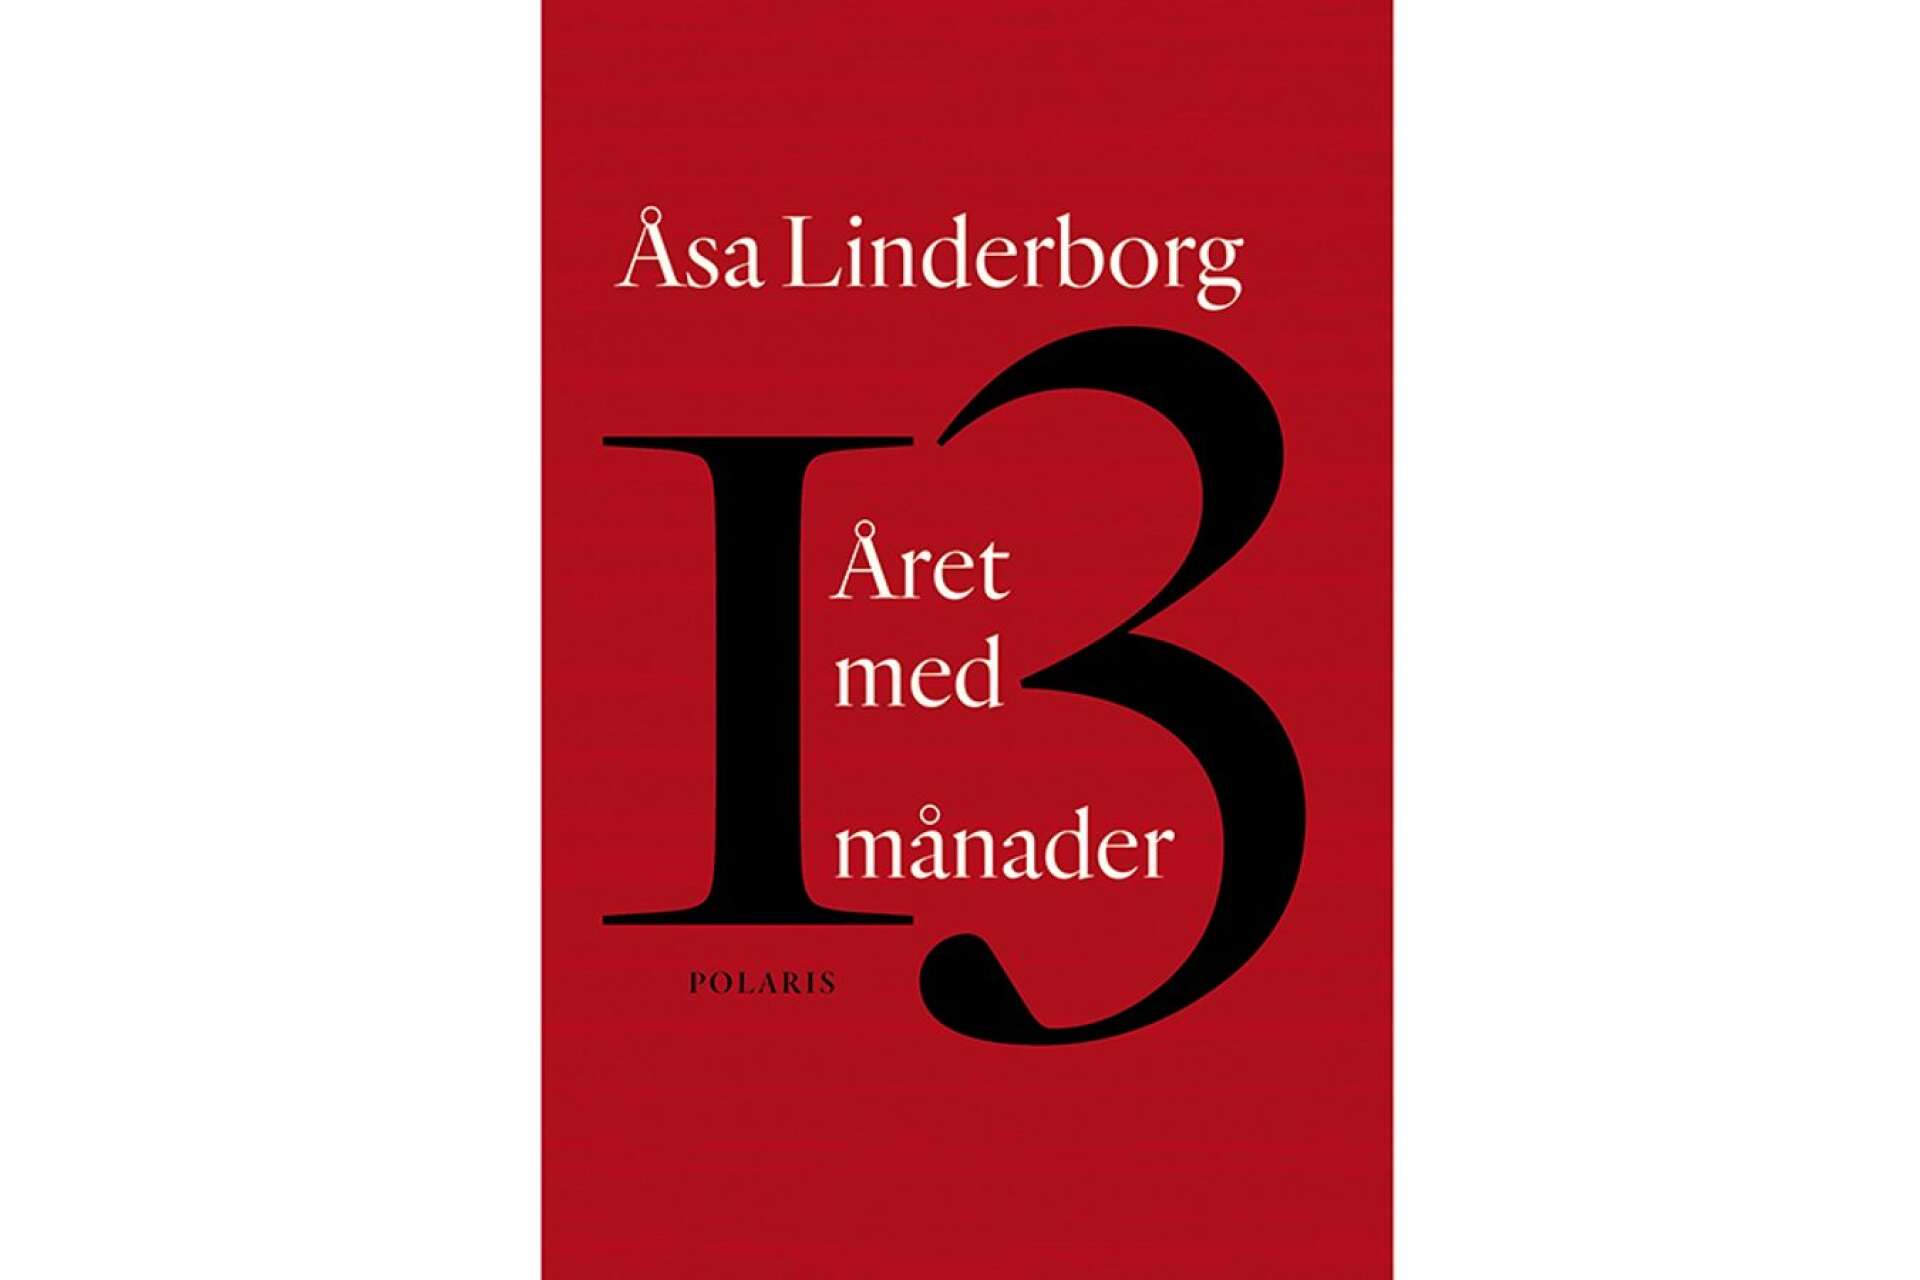 Titel:  Året med 13 månader Författare: Åsa Linderborg Förlag: Polaris